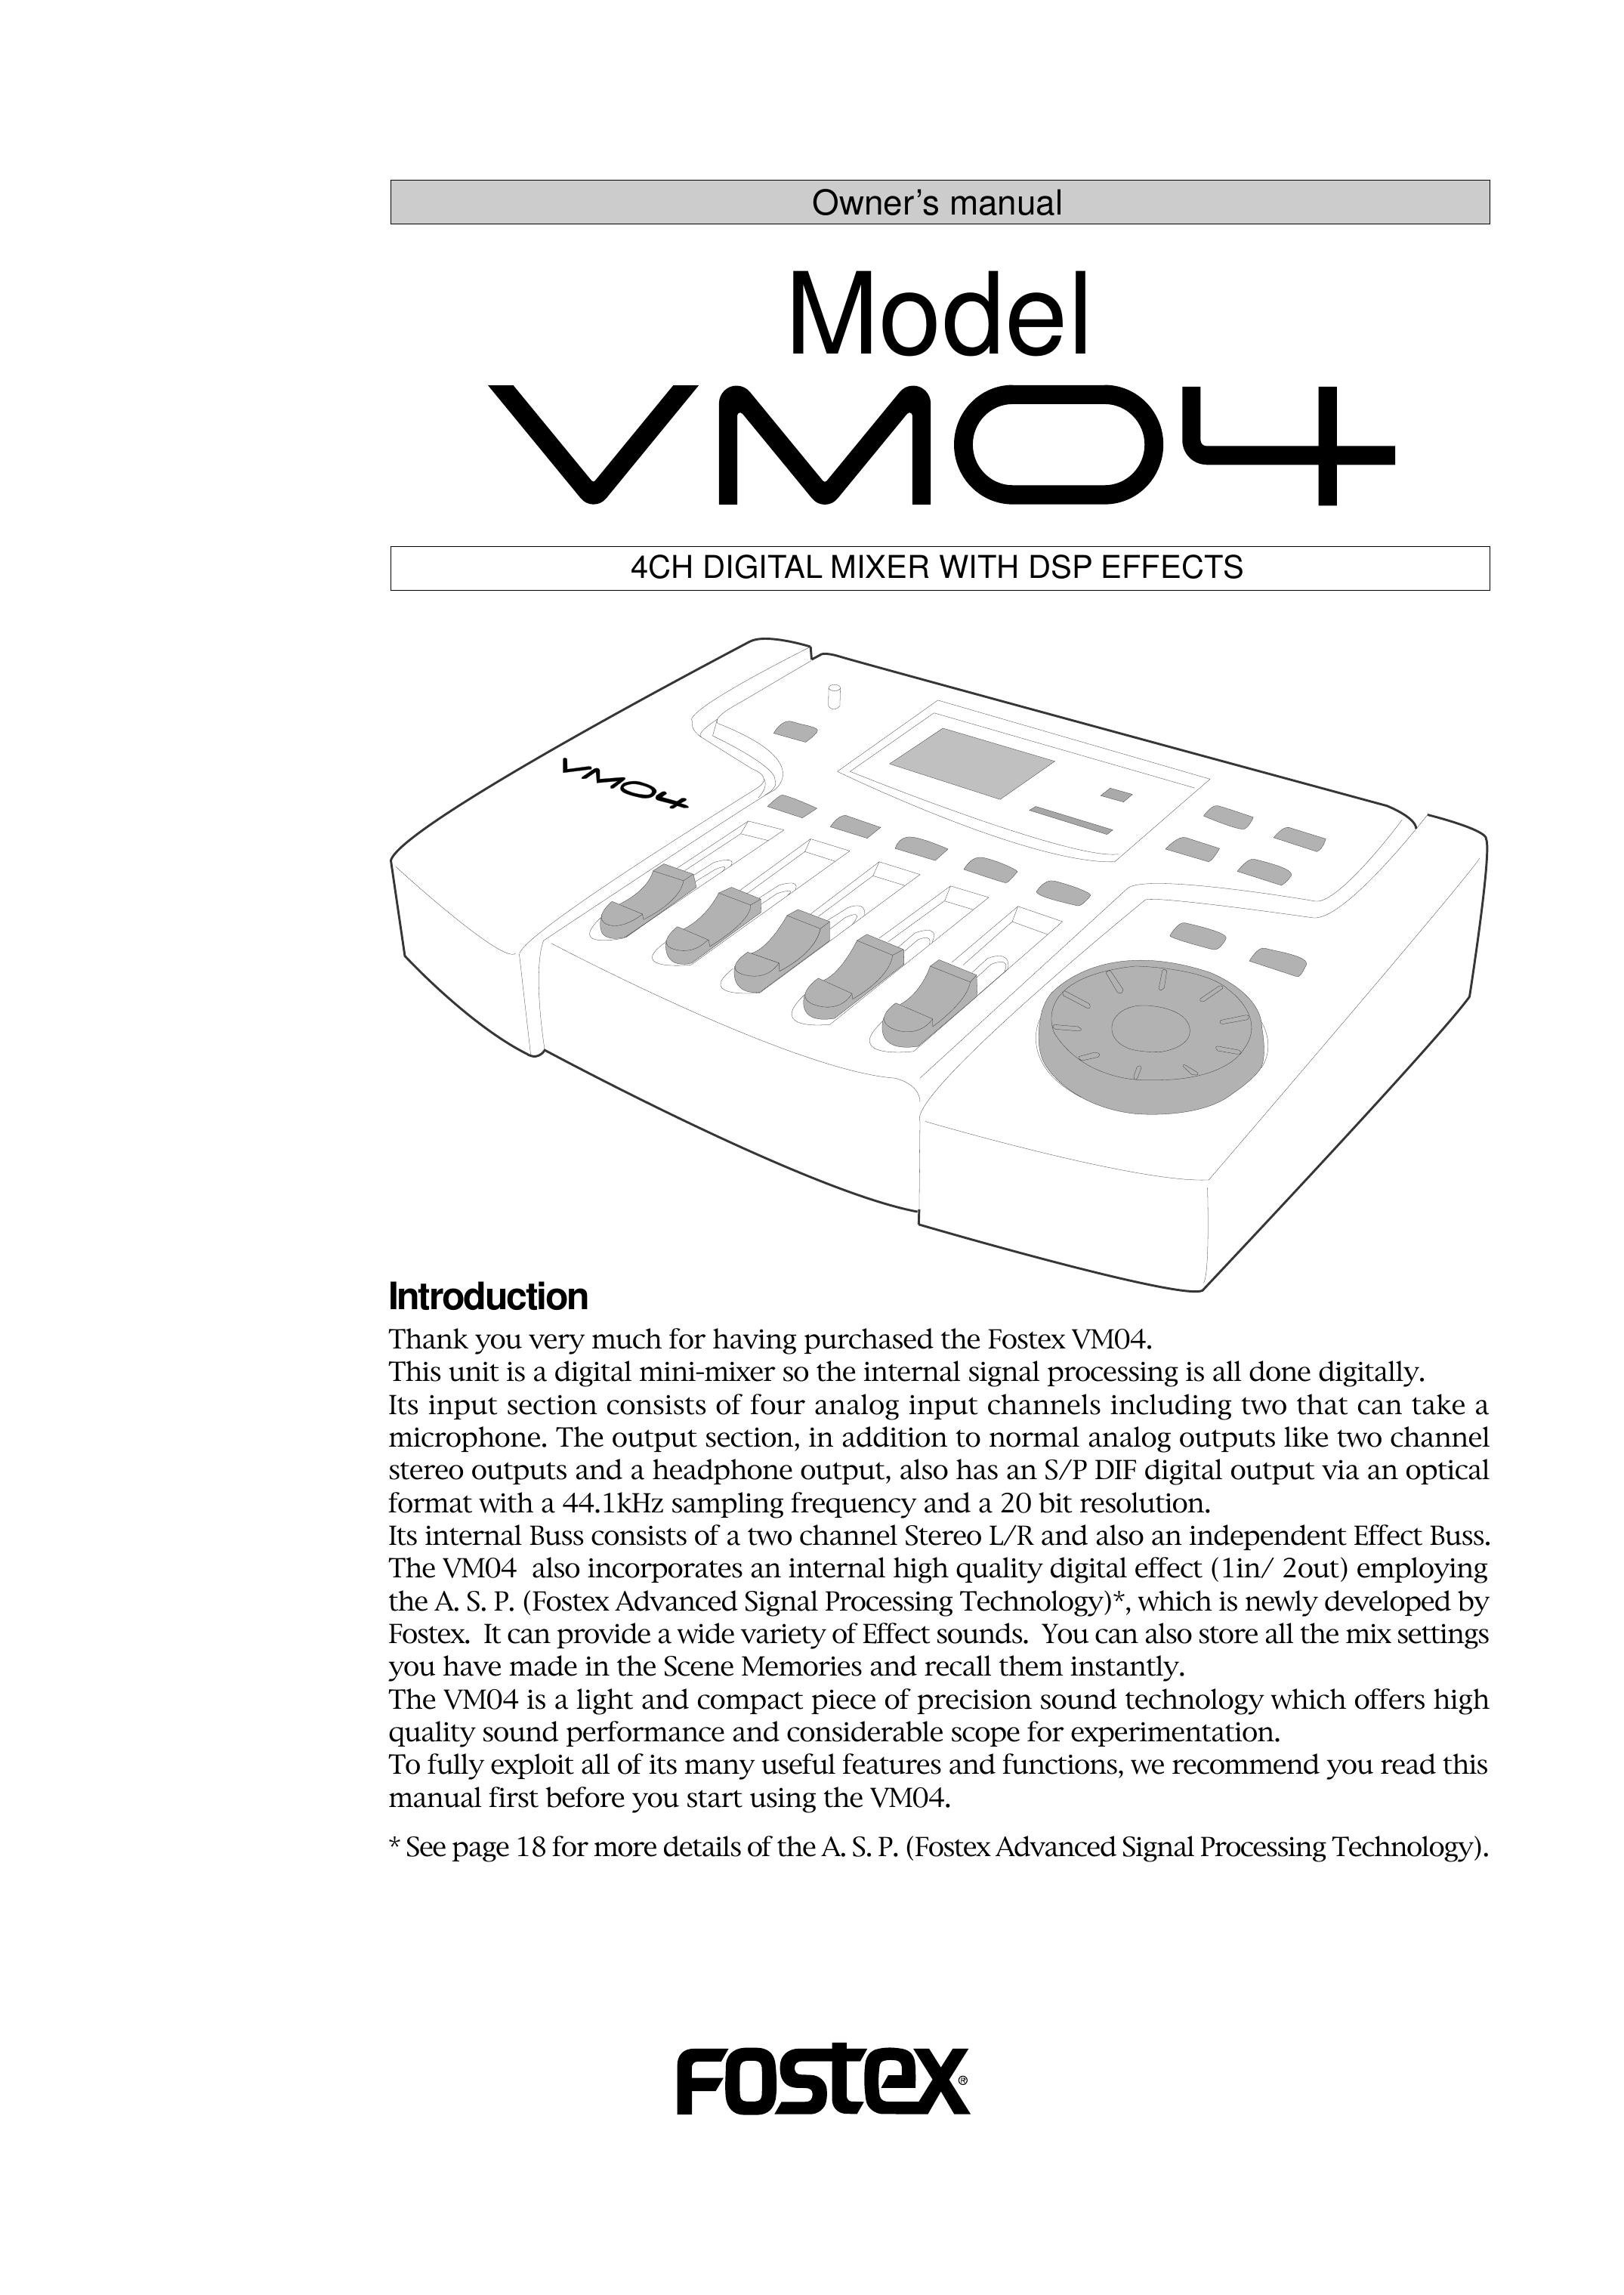 Fostex VM04 Musical Instrument User Manual